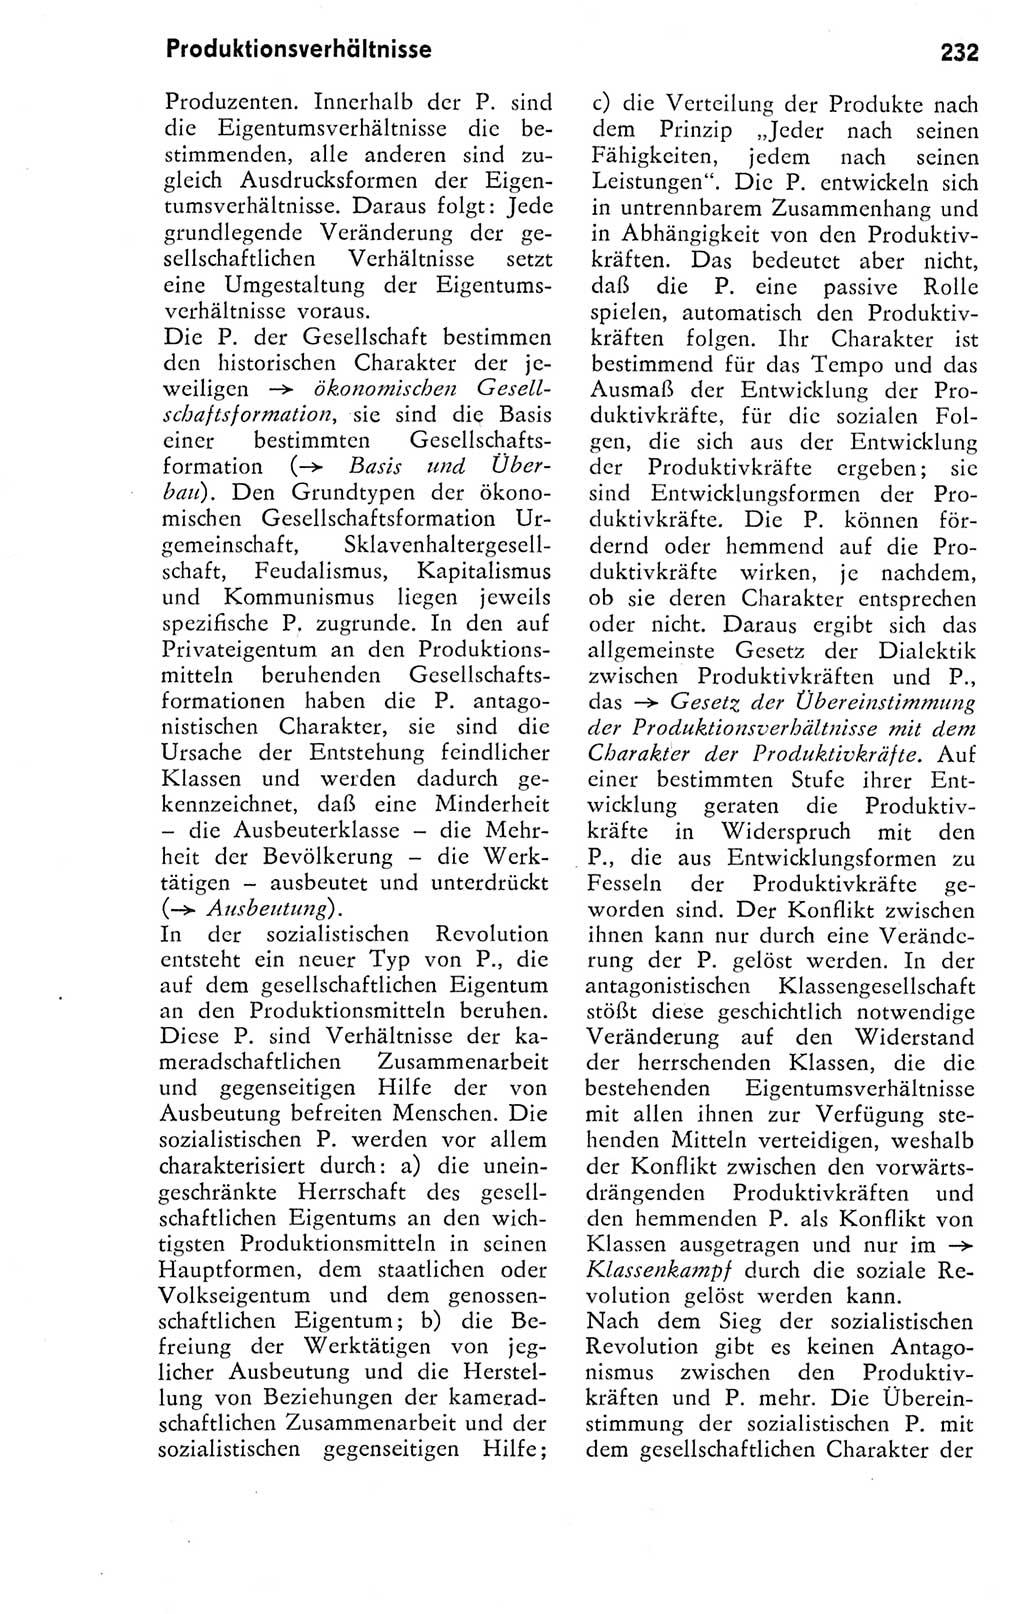 Kleines Wörterbuch der marxistisch-leninistischen Philosophie [Deutsche Demokratische Republik (DDR)] 1974, Seite 232 (Kl. Wb. ML Phil. DDR 1974, S. 232)